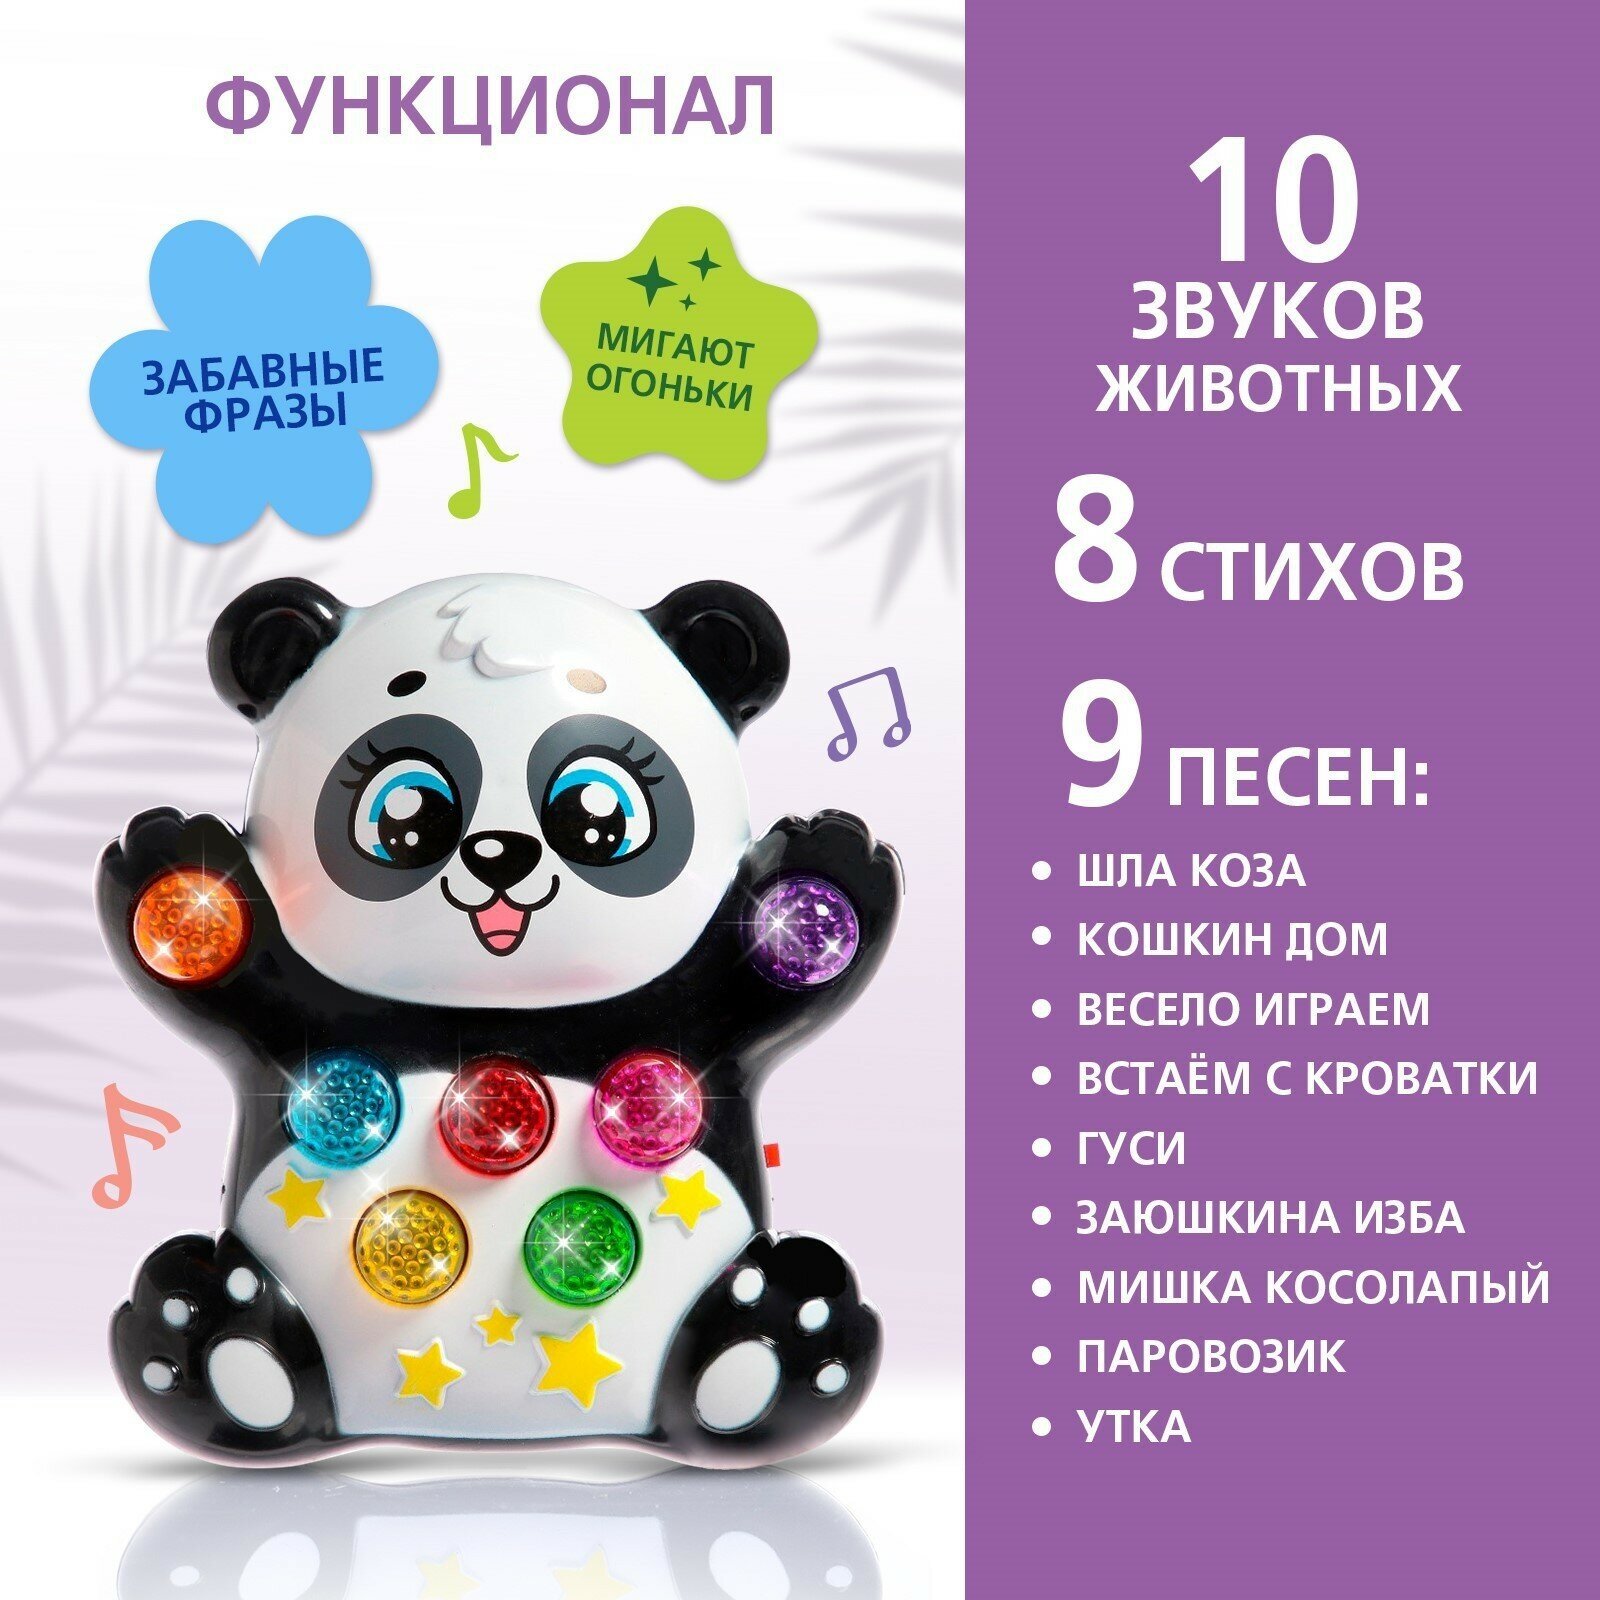 Музыкальная игрушка "Лучший друг: Панда", световые и звуковые эффекты, для детей и малышей